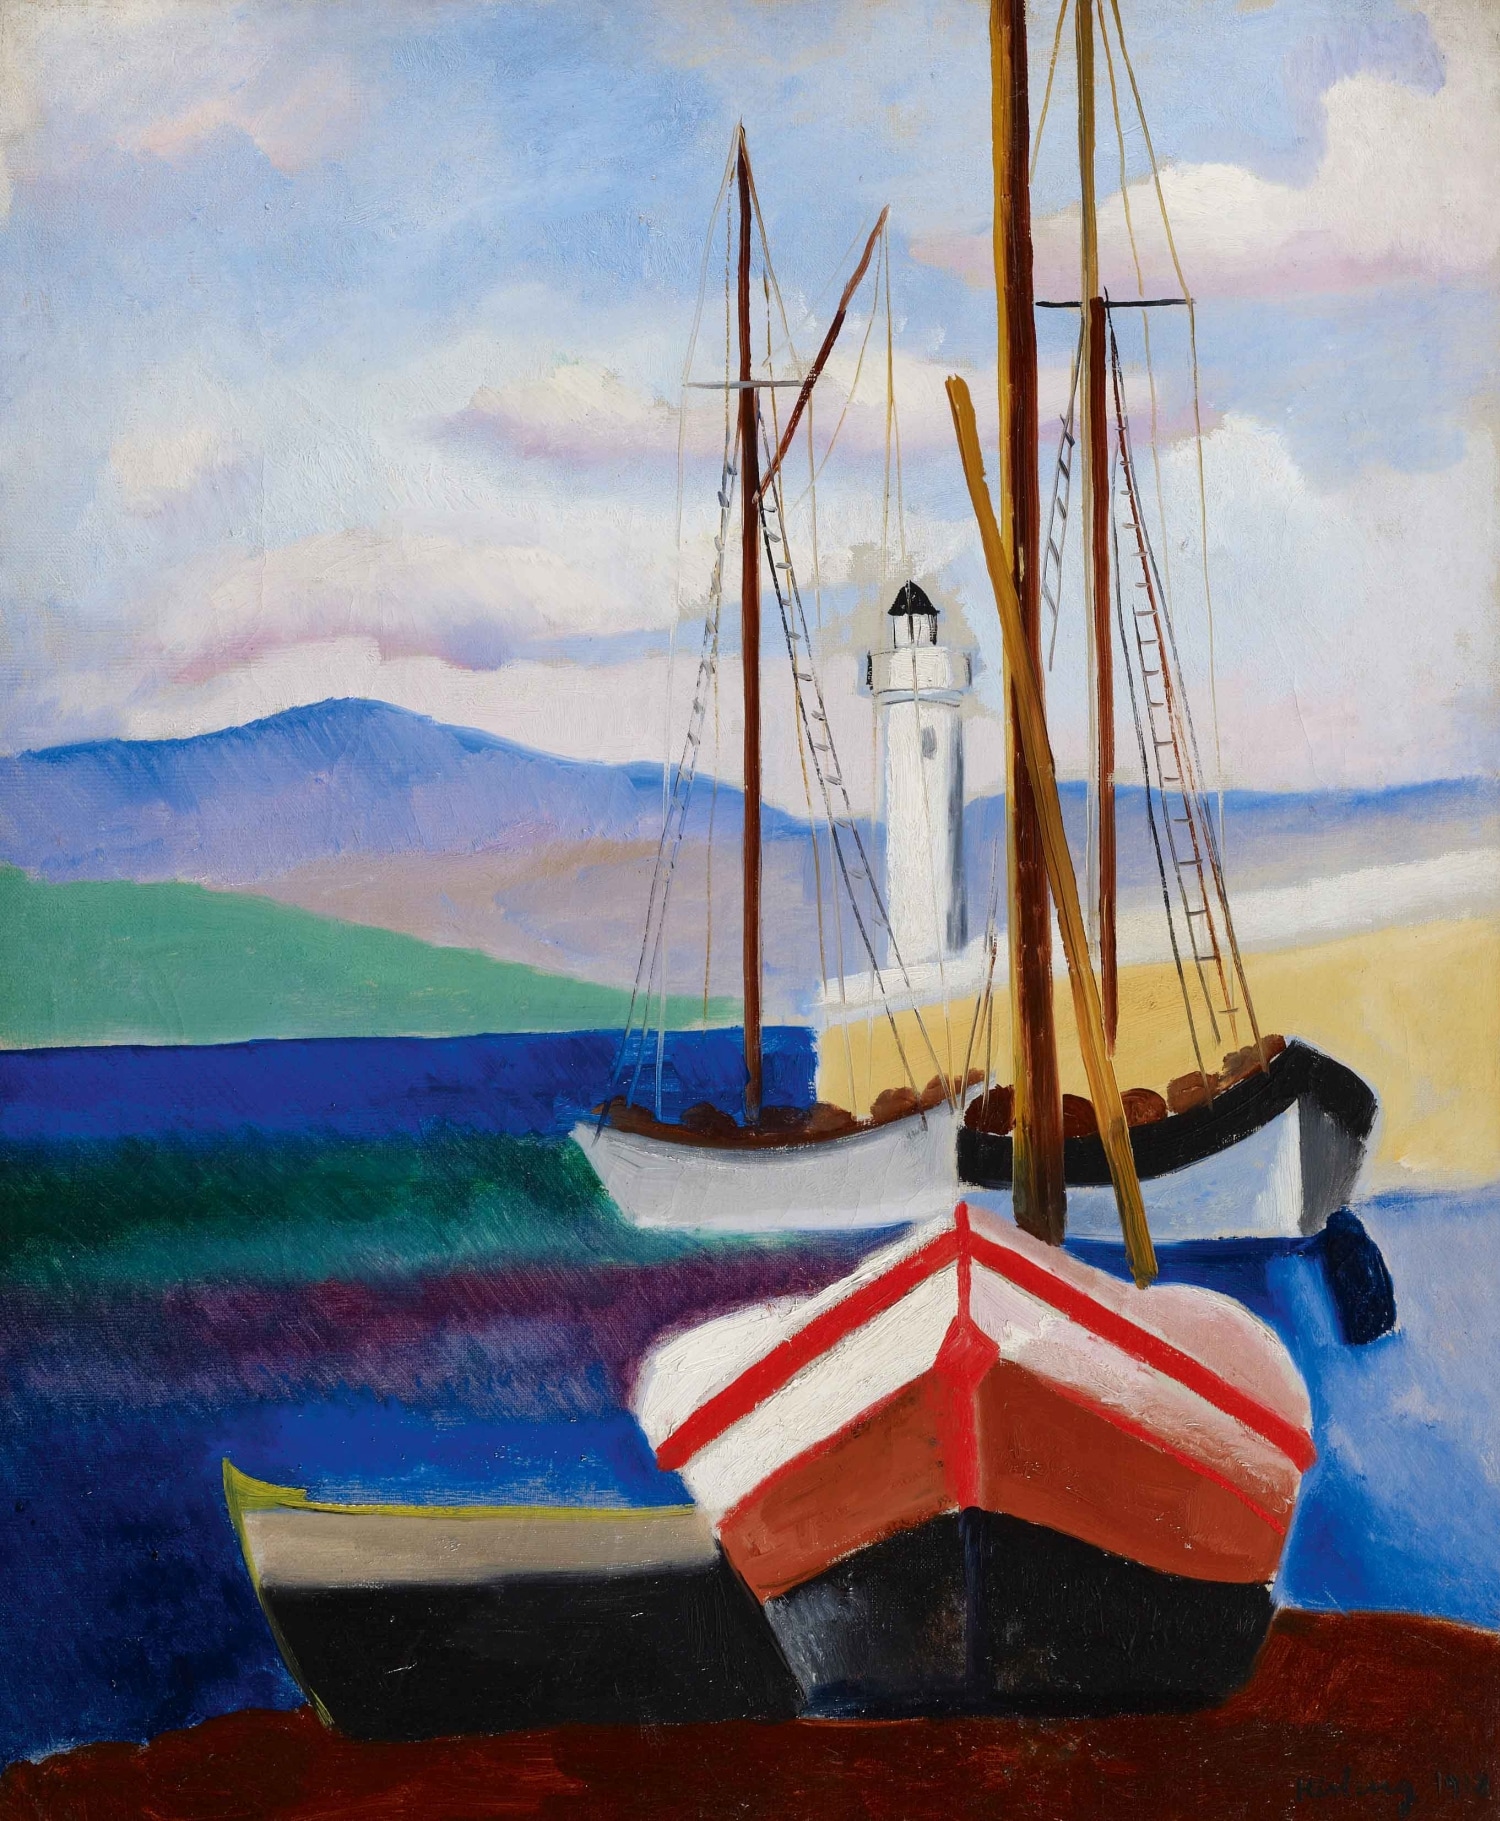 Moïse Kisling (Kraków, 1891 −Bandol, 1953). St-Tropez, 1918. Olio su tela, 65,2 x 54,2 cm. Collezione Jonas Netter